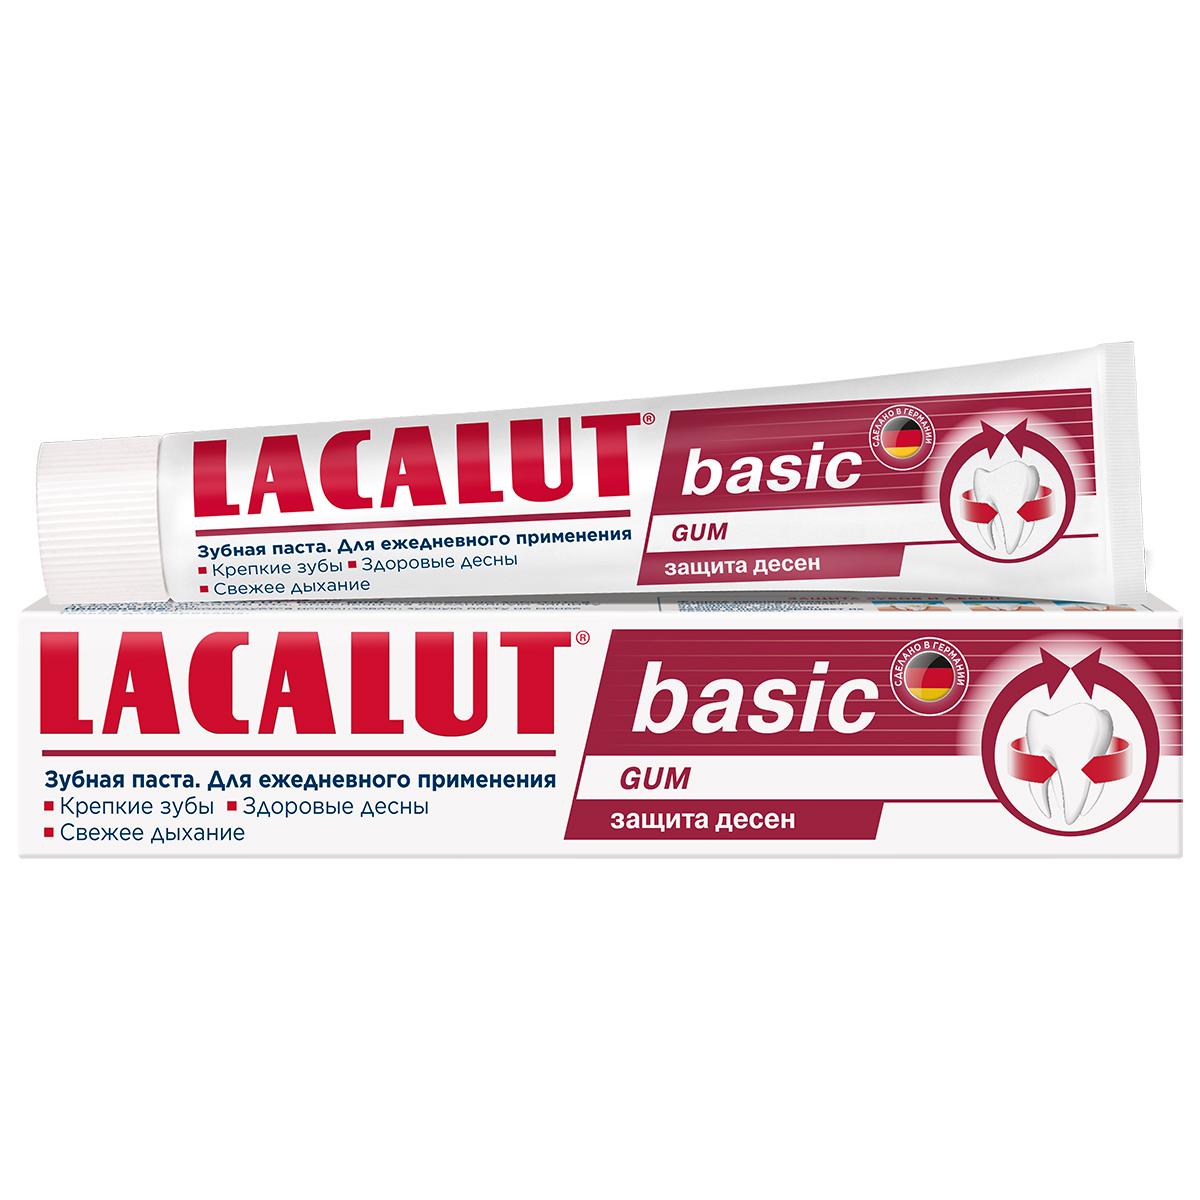 Lacalut Зубная паста Basic Gum для защиты десен, 75 мл (Laca